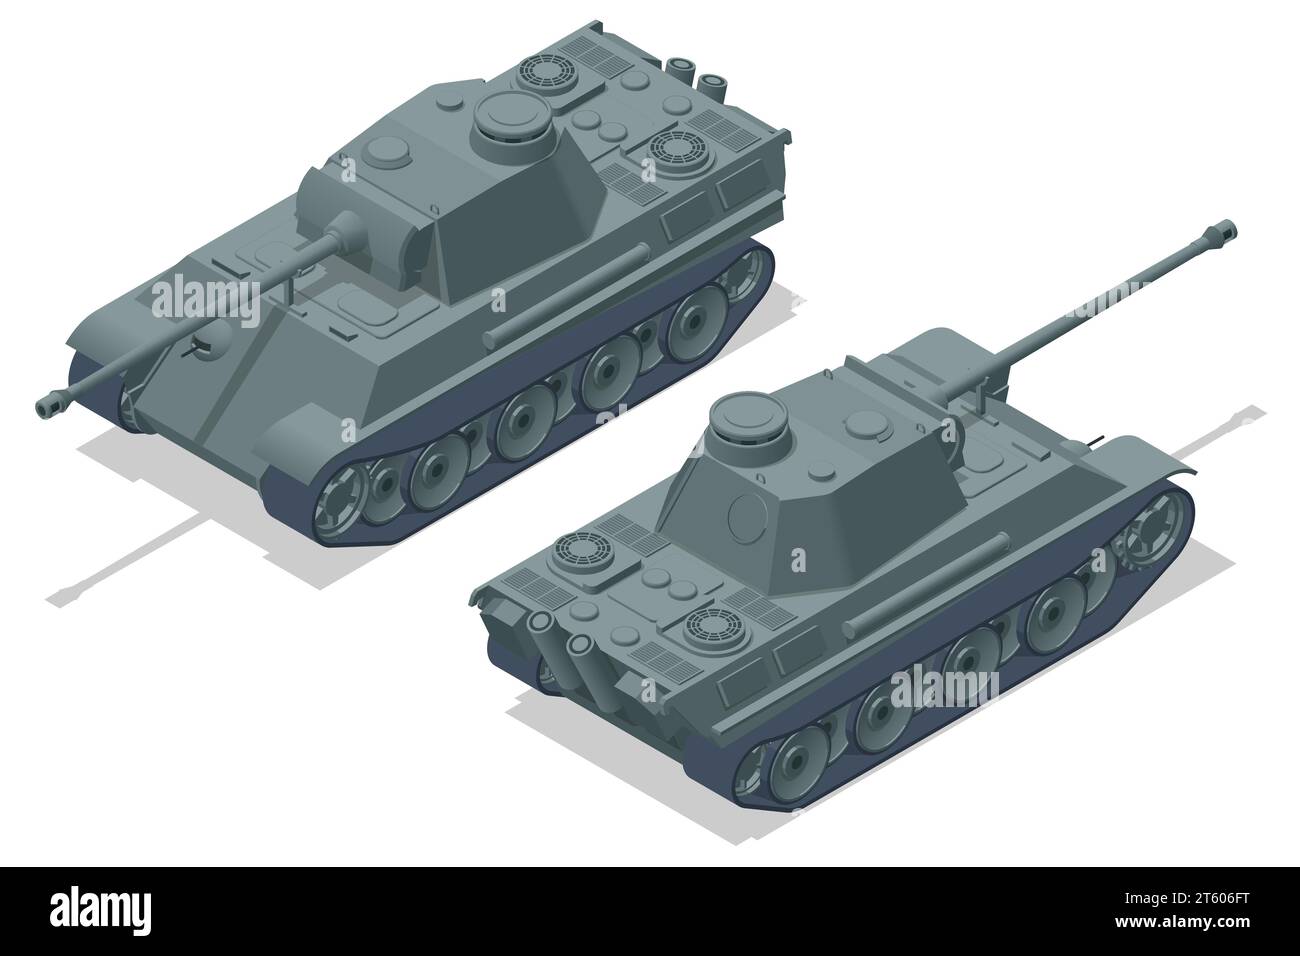 Réservoir isométrique Allemagne, Pz.Kpfw.VI Tiger Ausf.H. Véhicule blindé de combat conçu pour le combat de première ligne, avec une forte puissance de feu Illustration de Vecteur